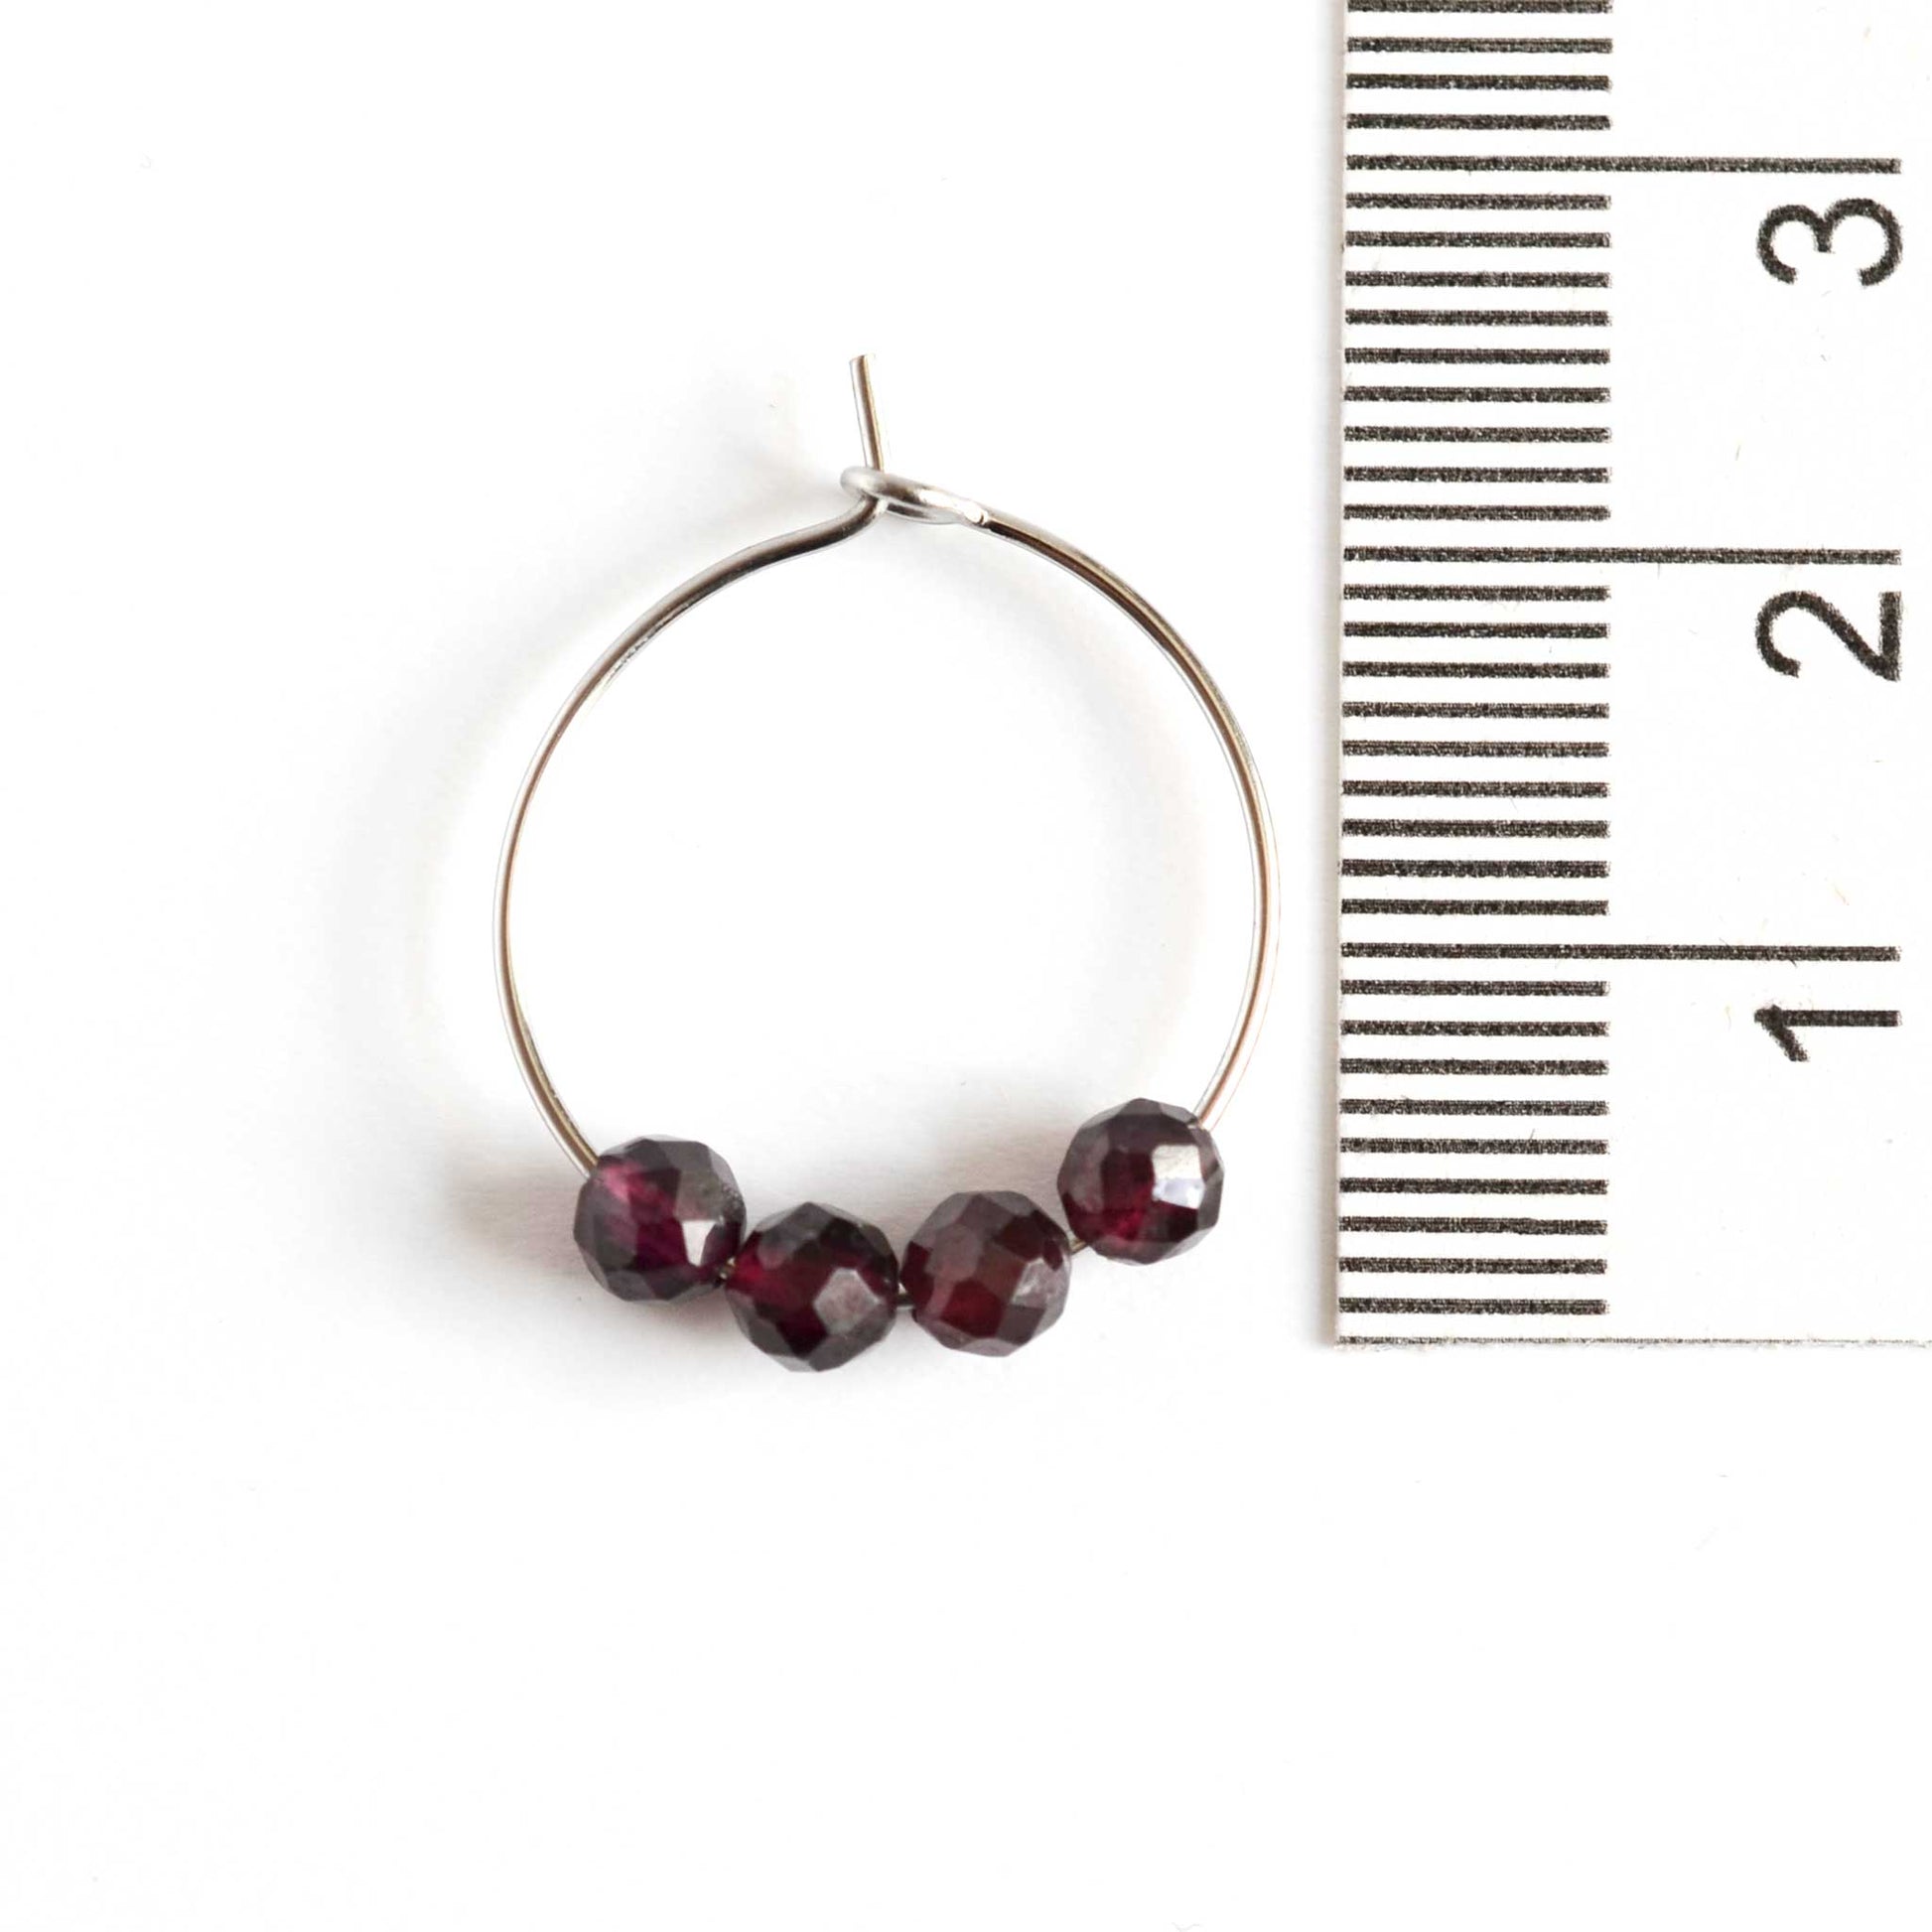 2cm diameter Garnet gemstone hoop earrings next to ruler